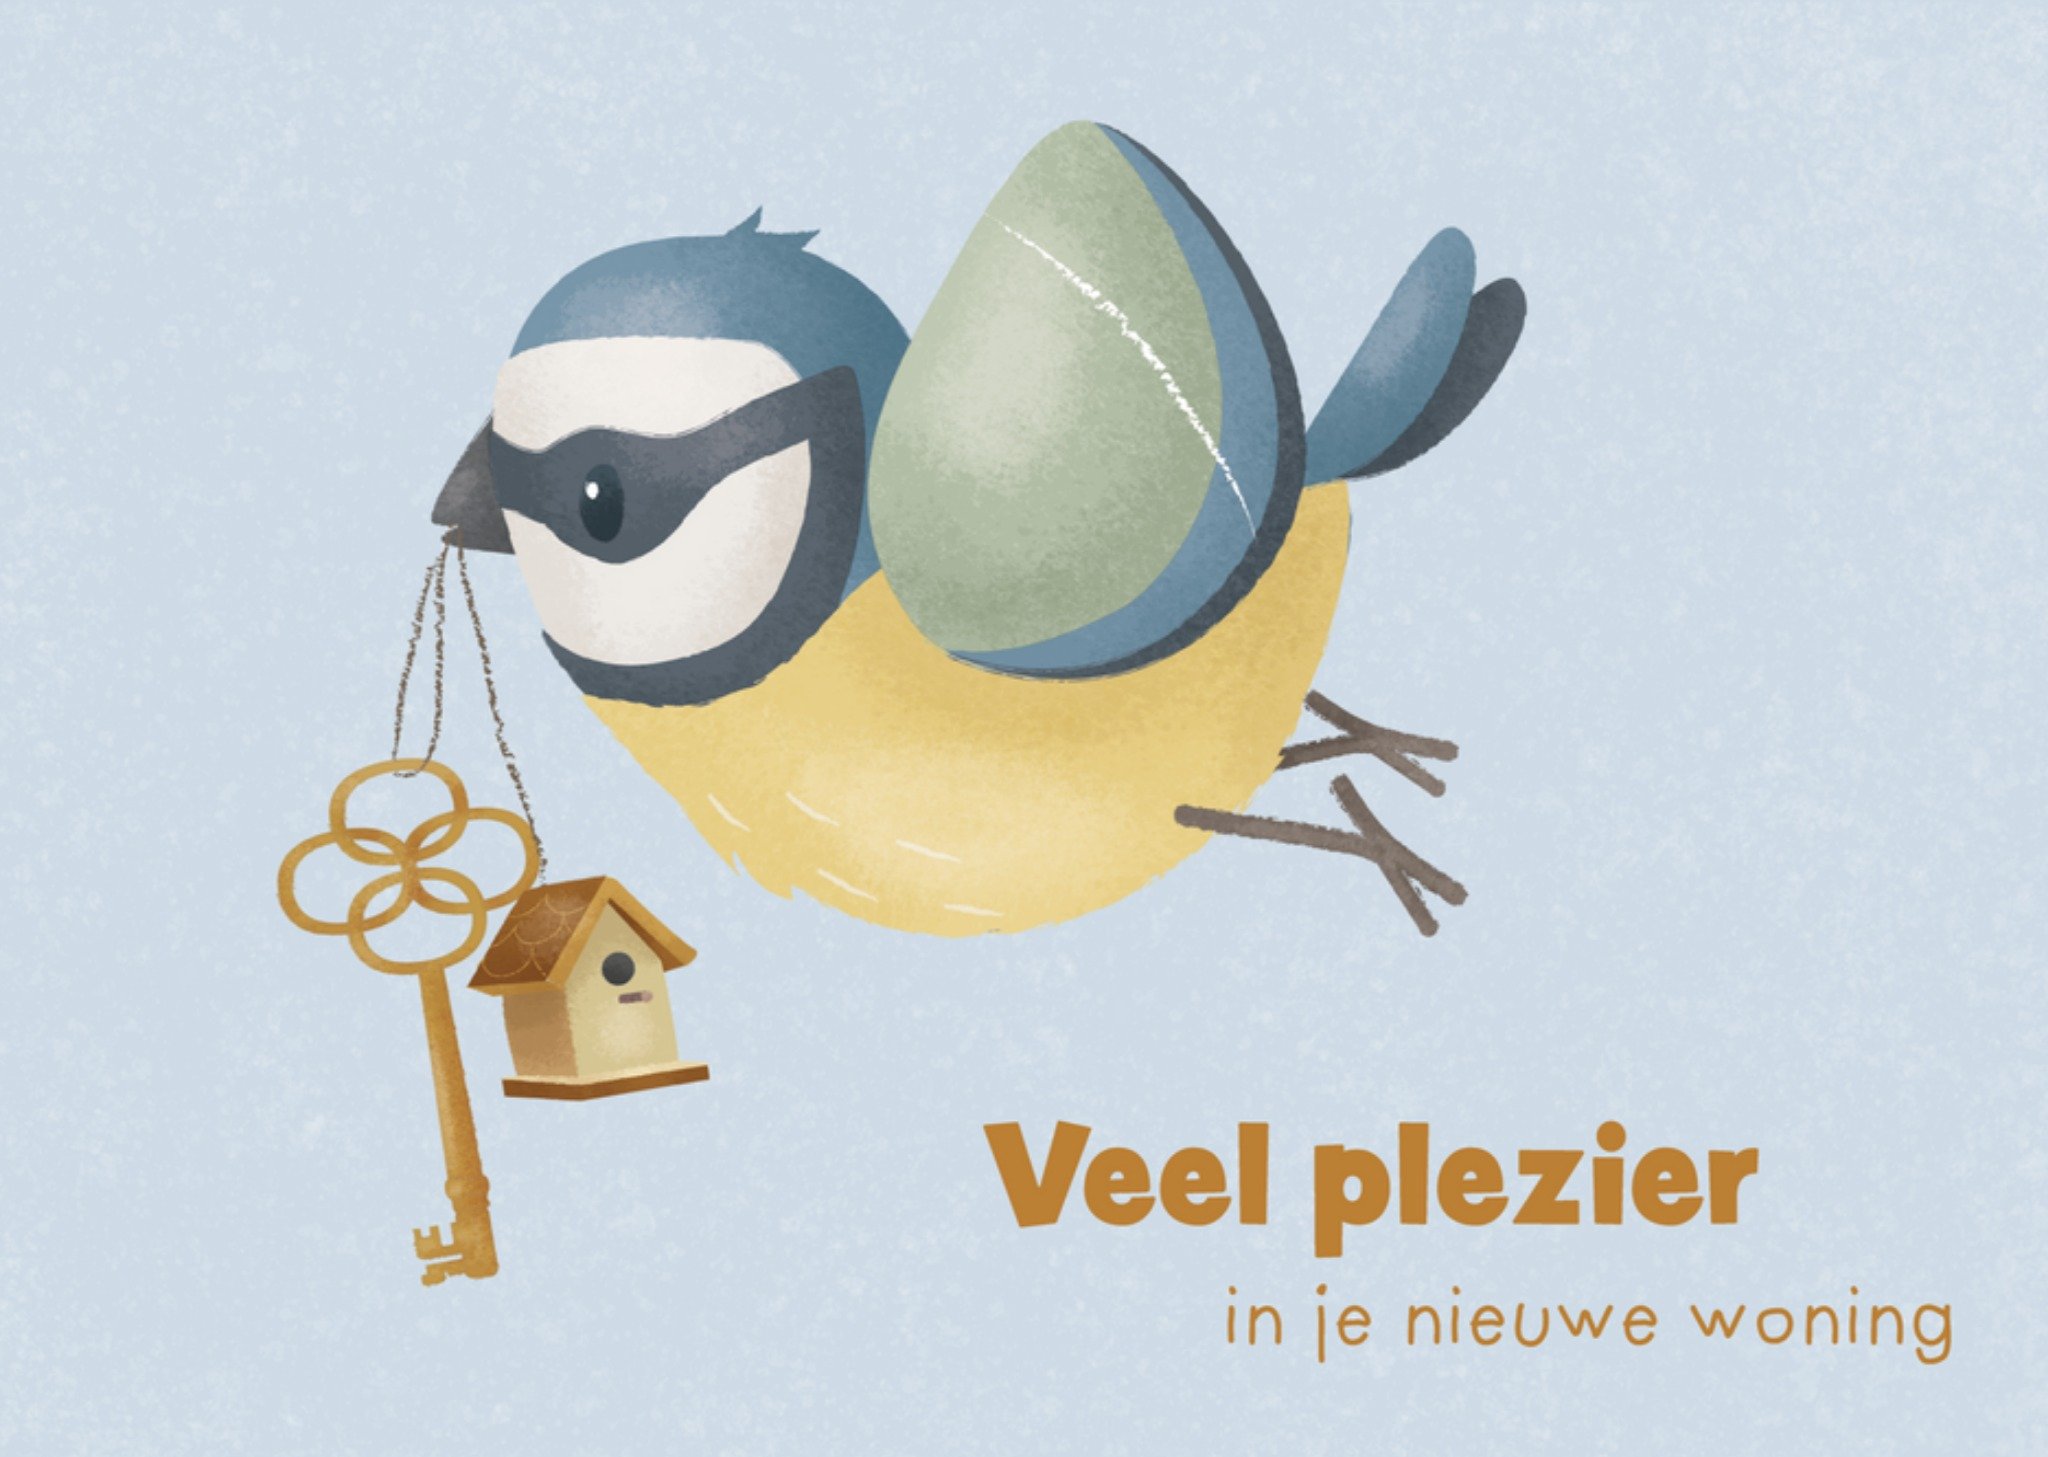 Little Dutch - Nieuwe woning kaart - Veel plezier